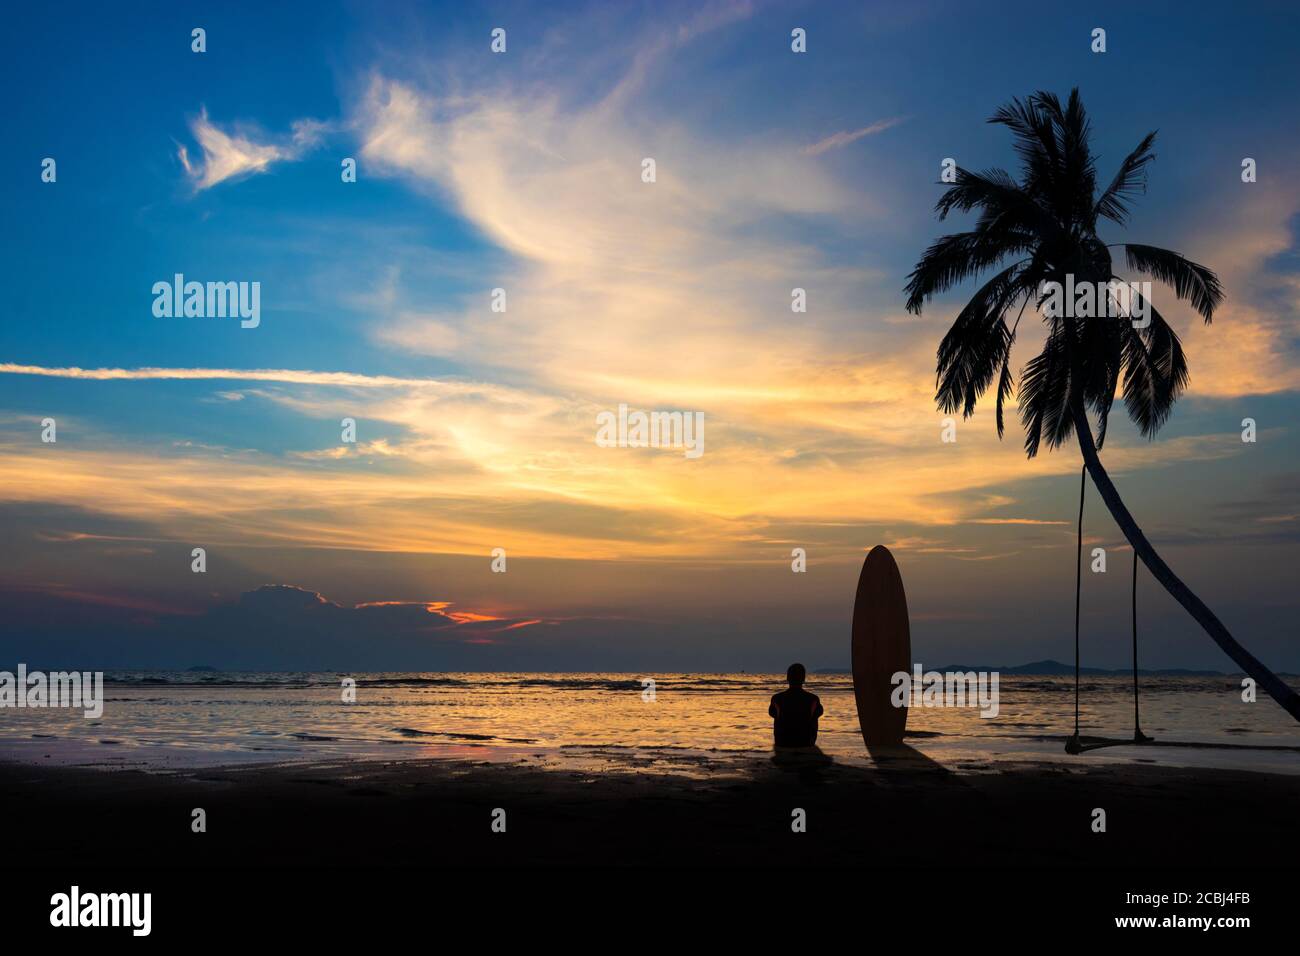 Silueta de hombre de surf sentarse con una tabla de surf en la playa. Surfing en la playa al atardecer con un colorido cielo. Estilo de vida de aventura de deportes acuáticos al aire libre. Foto de stock